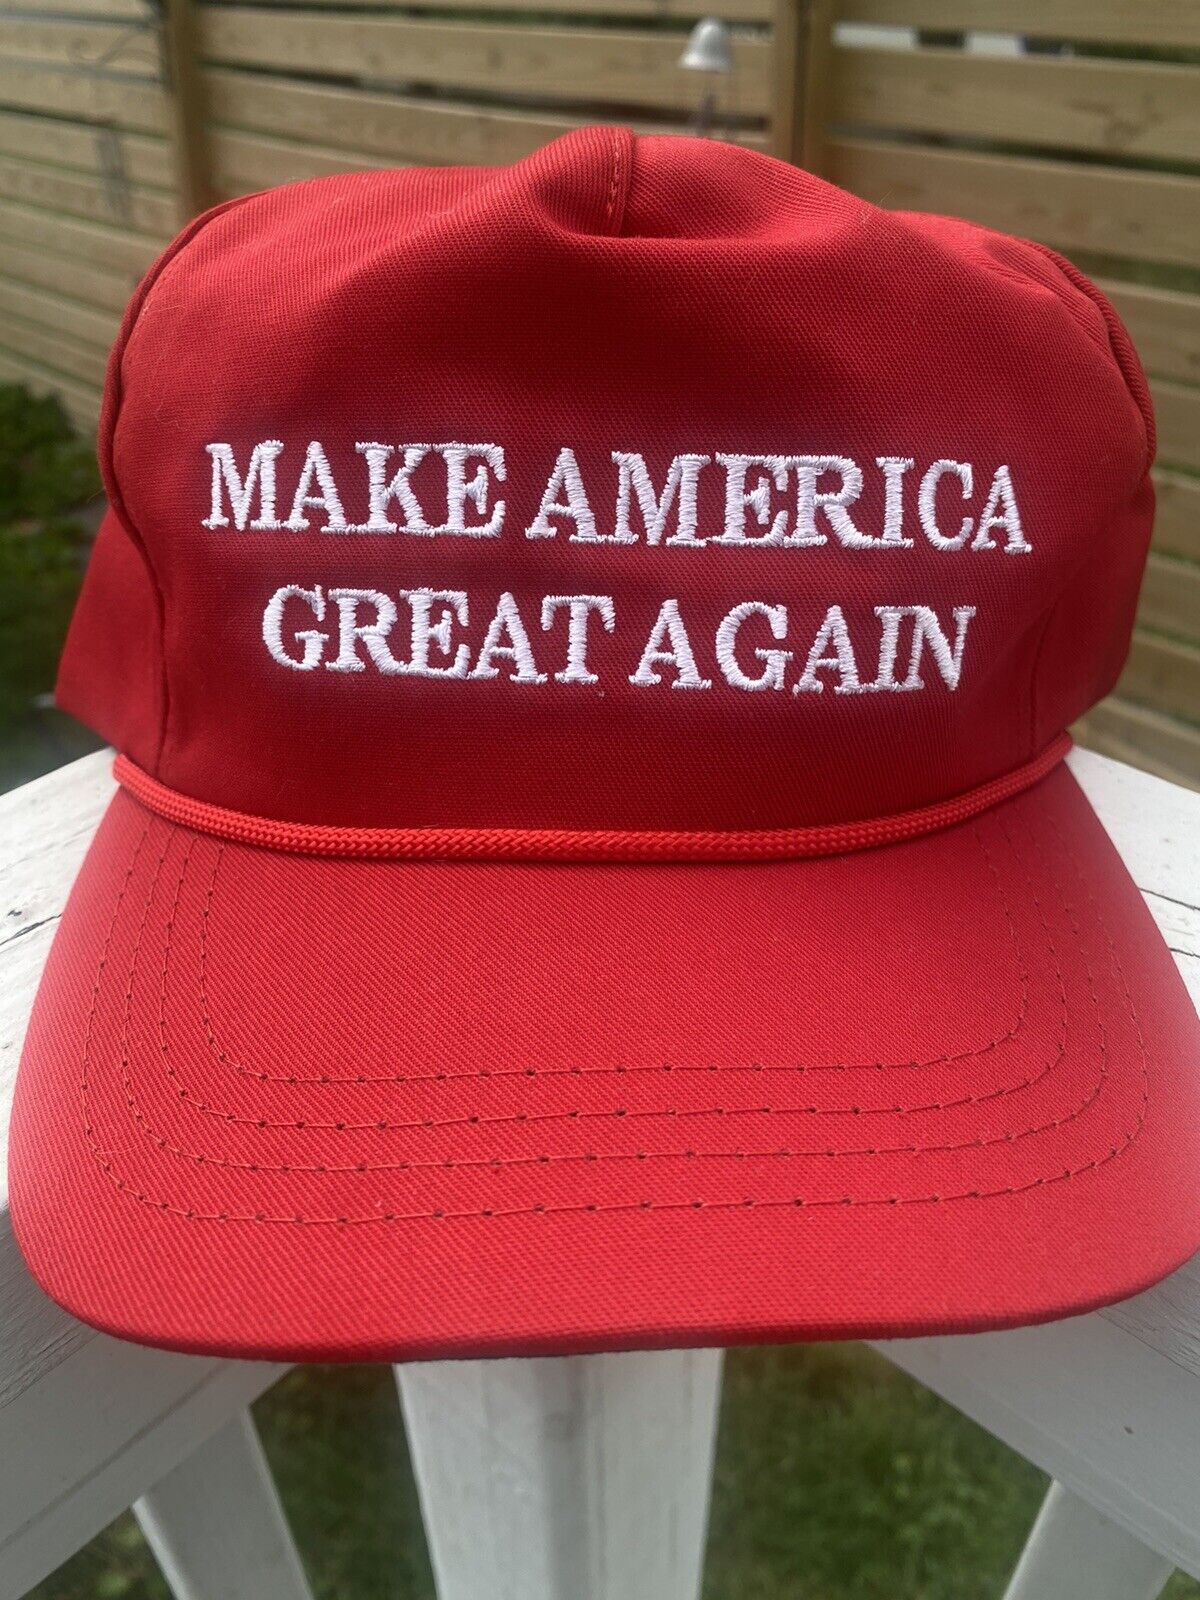 Official Trump MAGA Make America Great Again Hat Cap Red Cali Fame Rope Snapback